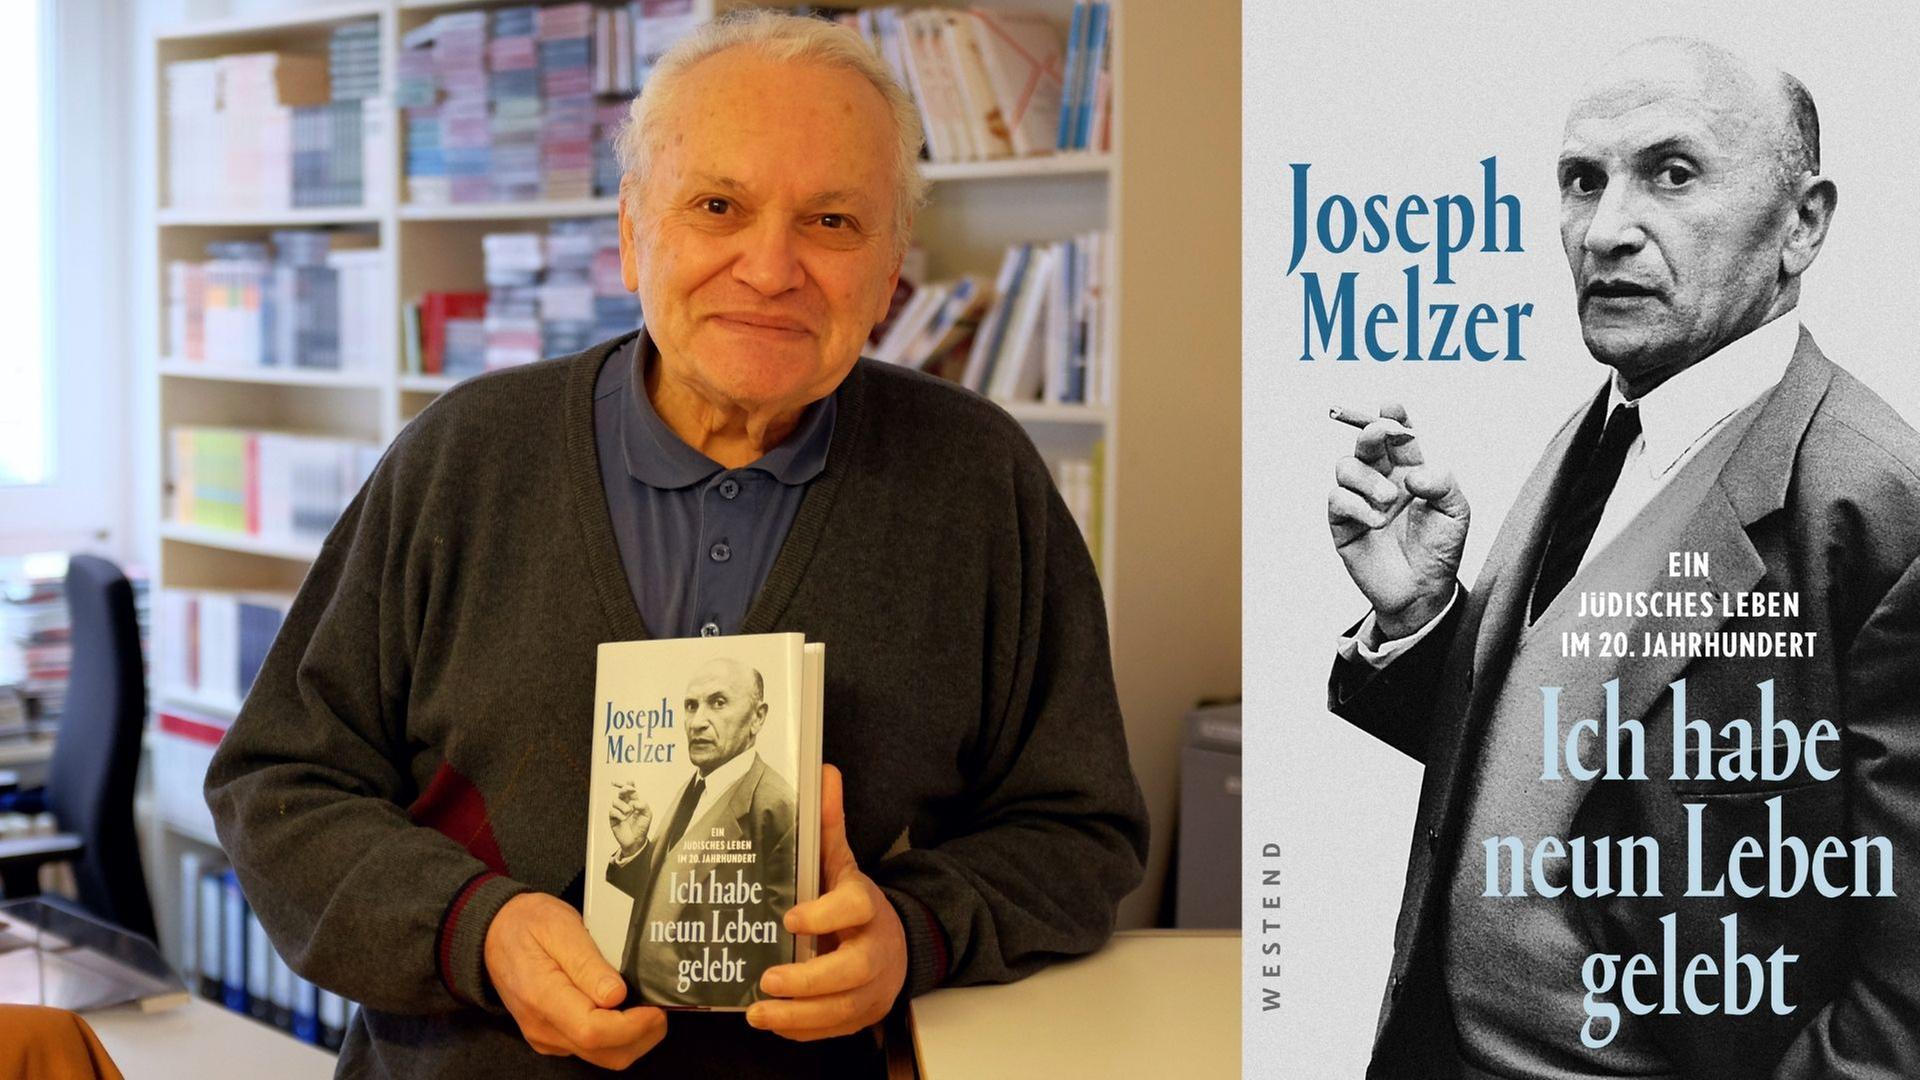 Abraham Melzer mit der Biografie seines Vaters Joseph Melzer: „Ich habe neun Leben gelebt"